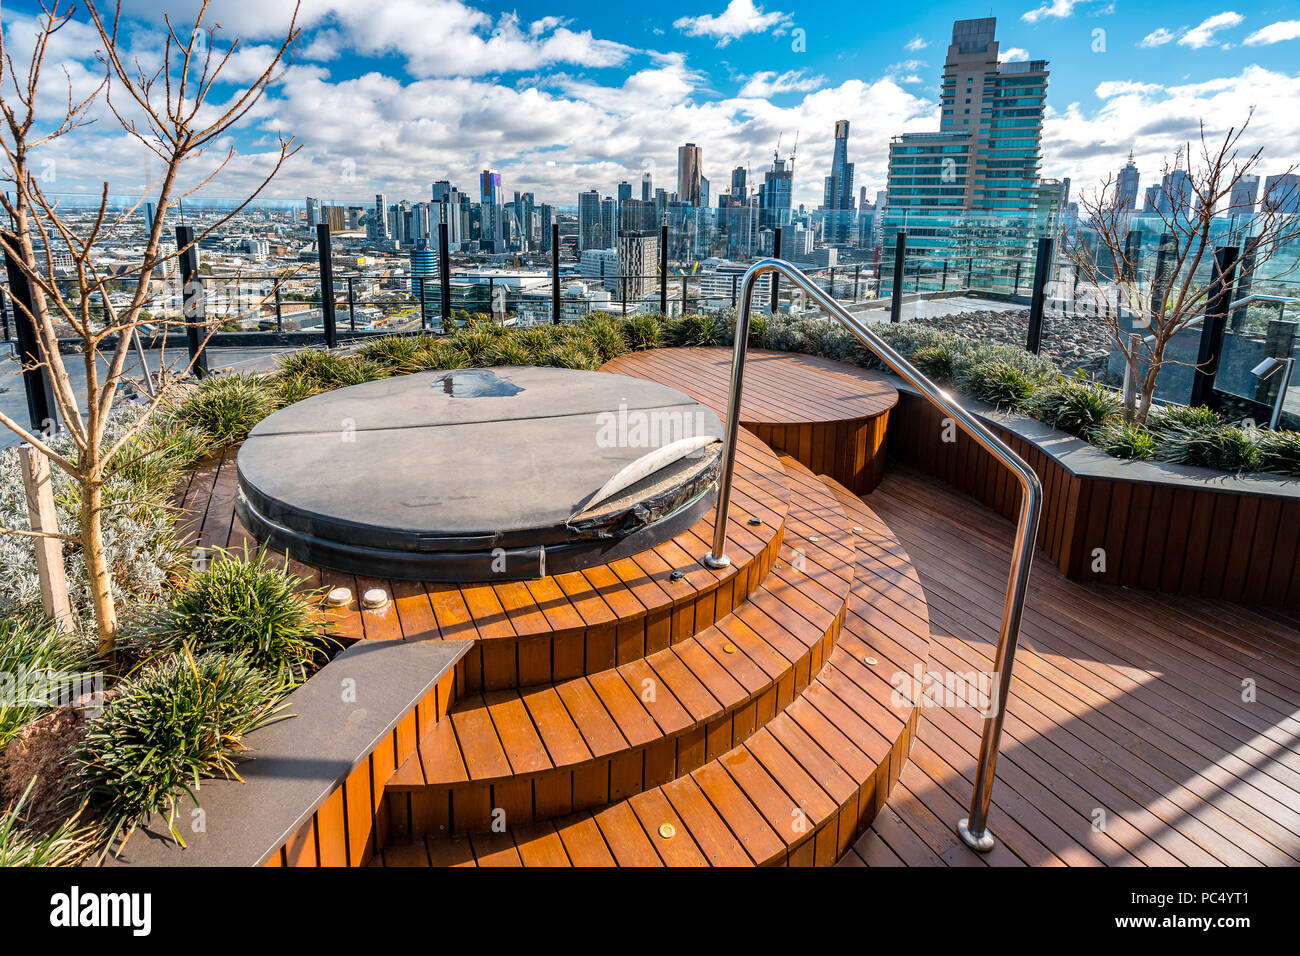 Melbourne, Australie - Baignoire à remous sur le toit de l'immeuble Banque D'Images